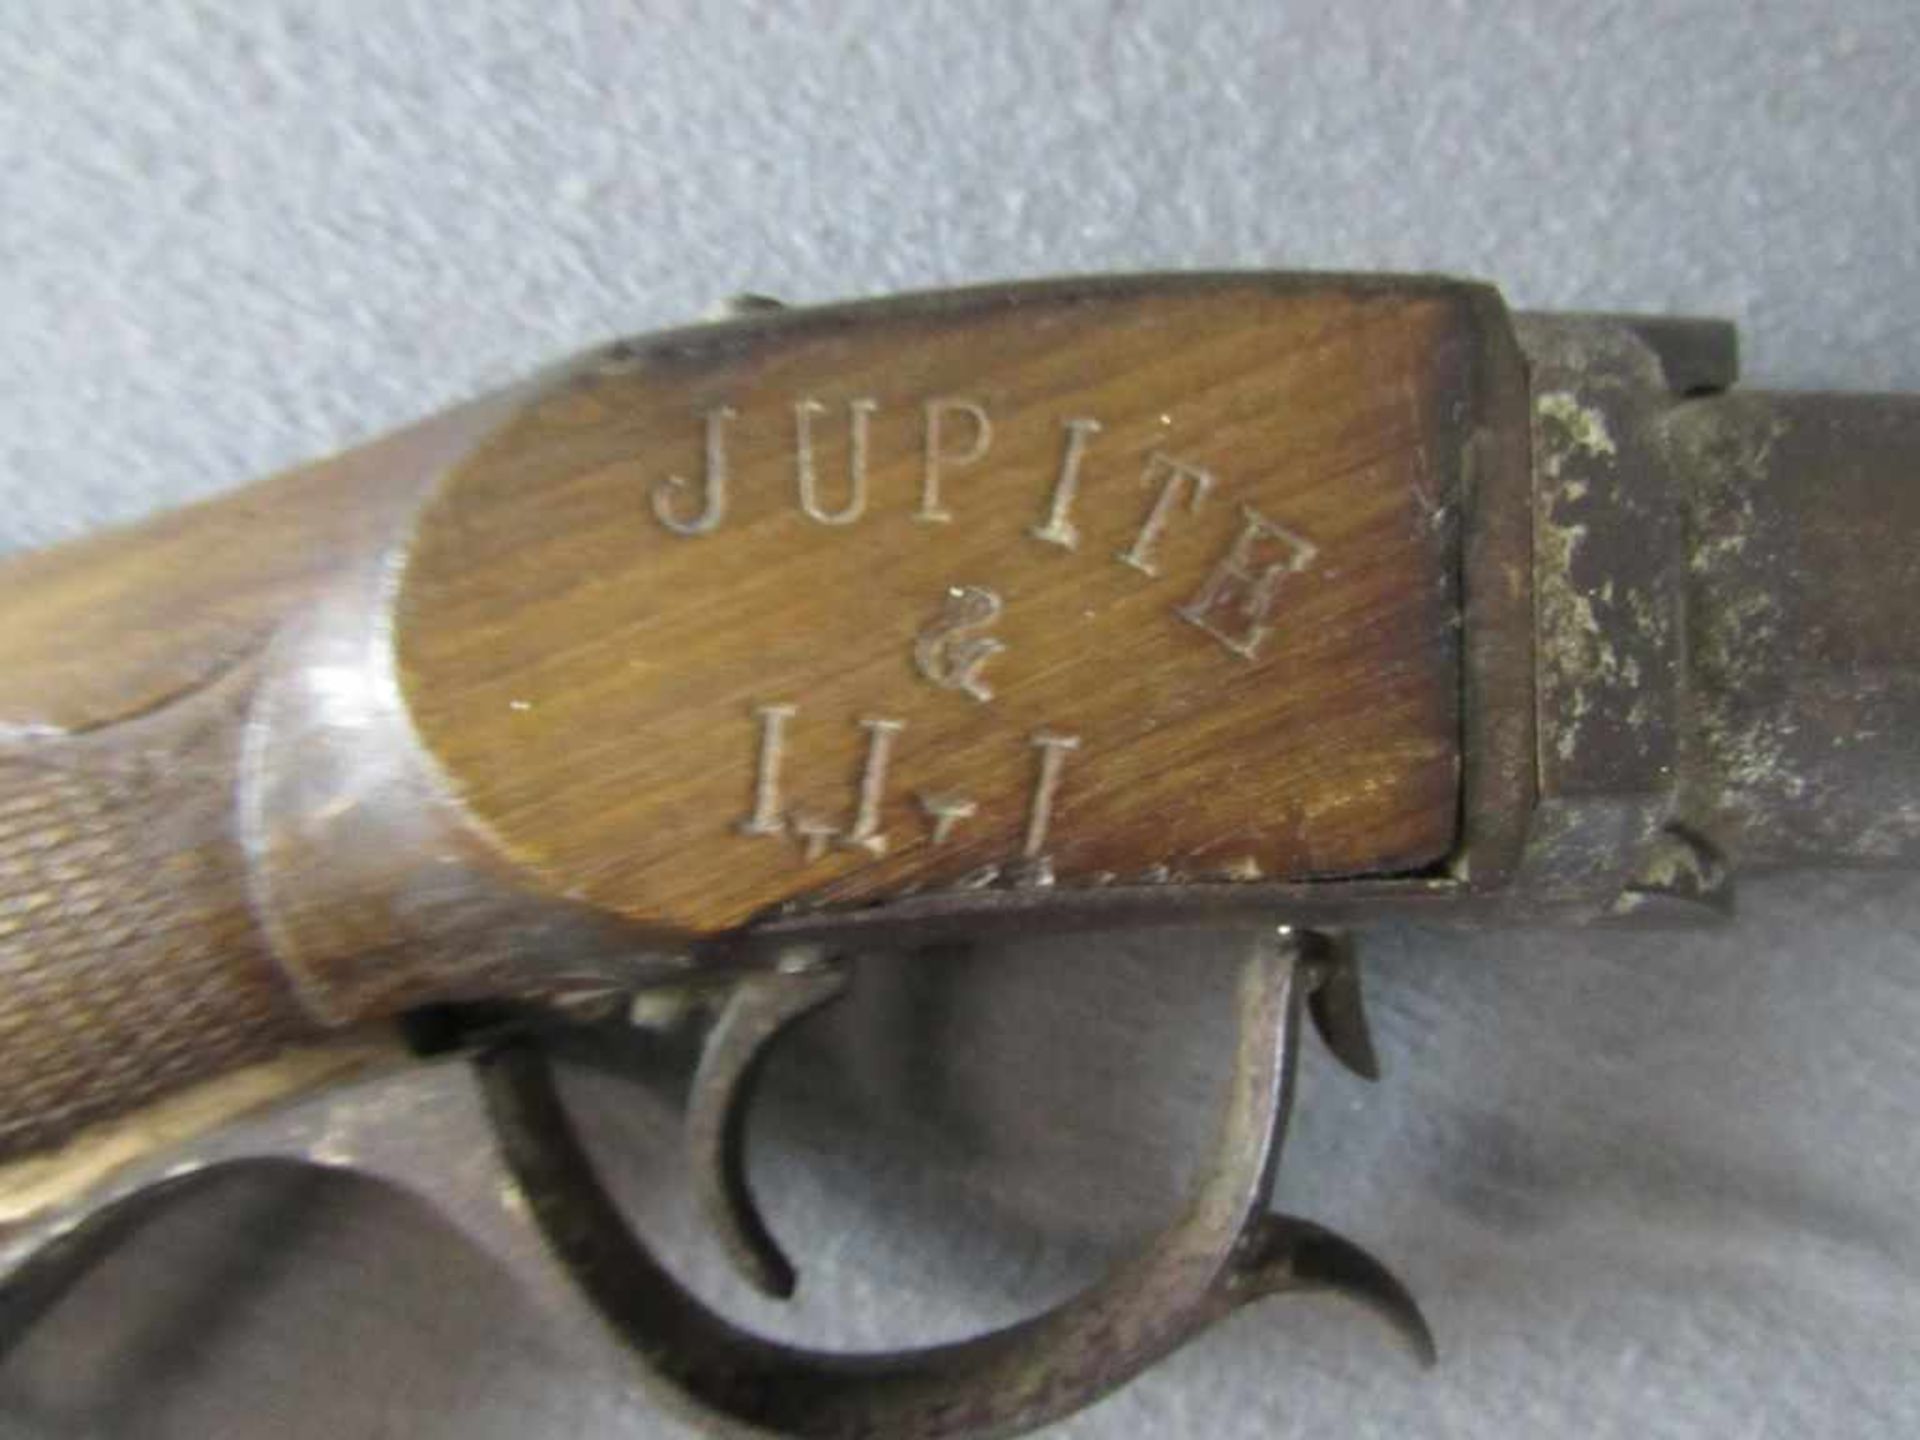 Antikes Luftgewehr Hersteller Jupite Modell Winchester unterhalb mit Spannvorrichtung - Image 3 of 4